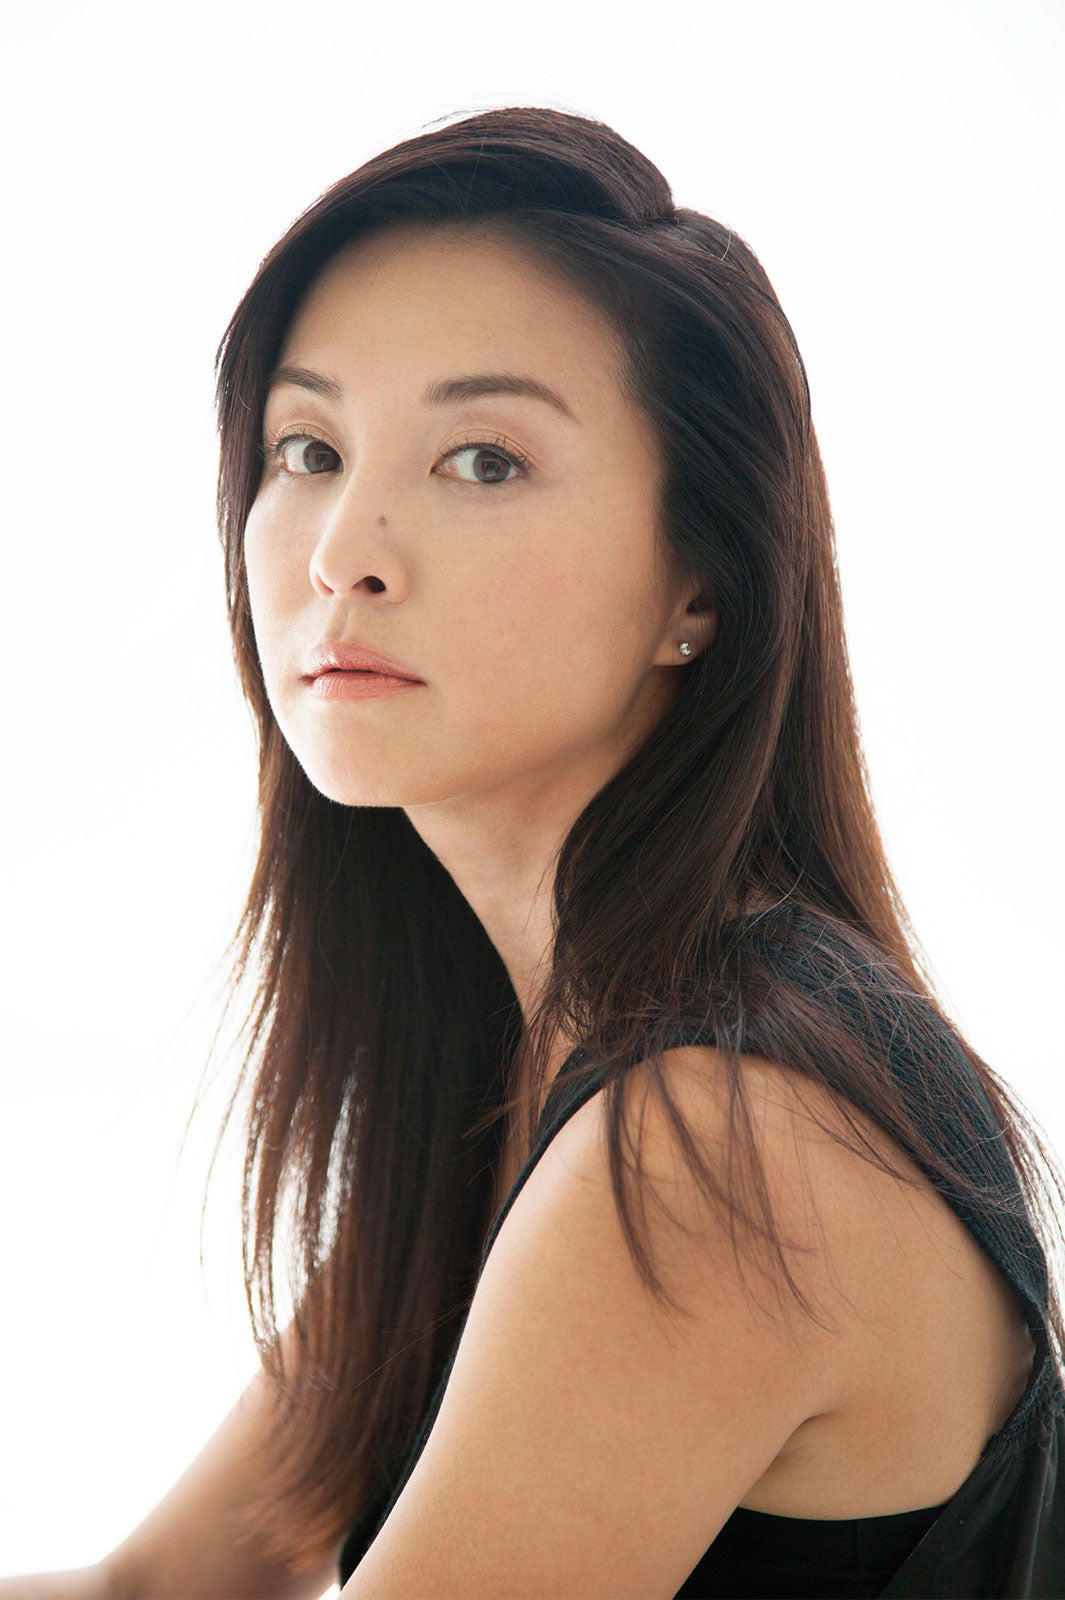 約10年のブランクを経てモデル復帰 “OLのアイコン”青山恭子が変わらず美しい - モデルプレス